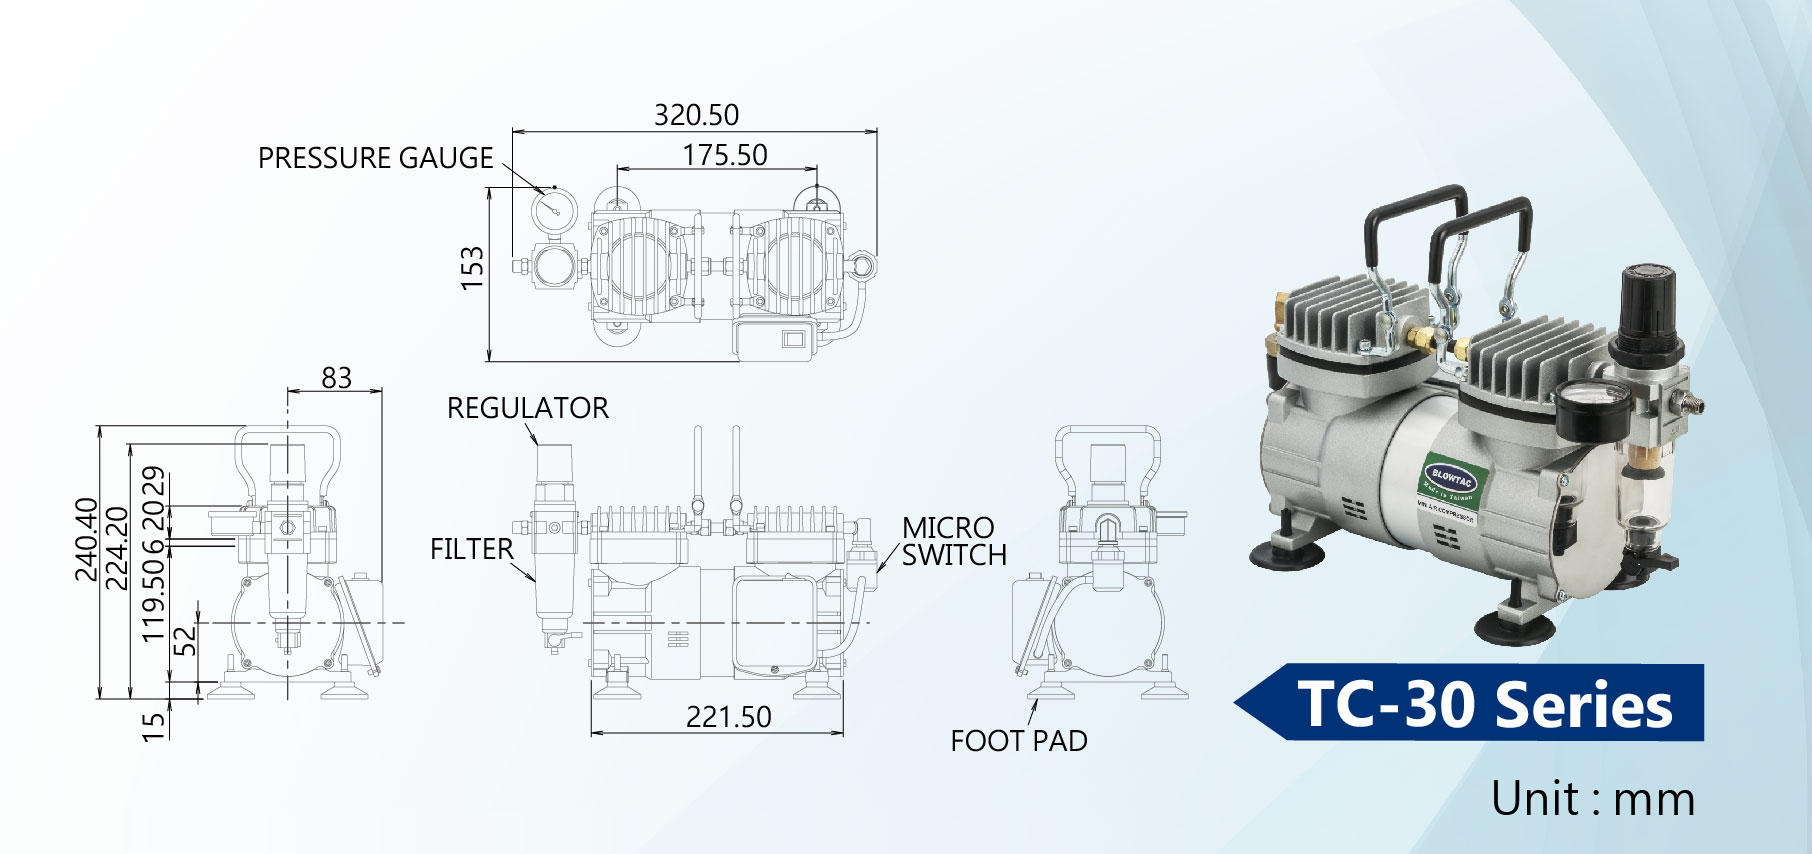 Dimensión de los mini compresores de aire de la serie TC-30